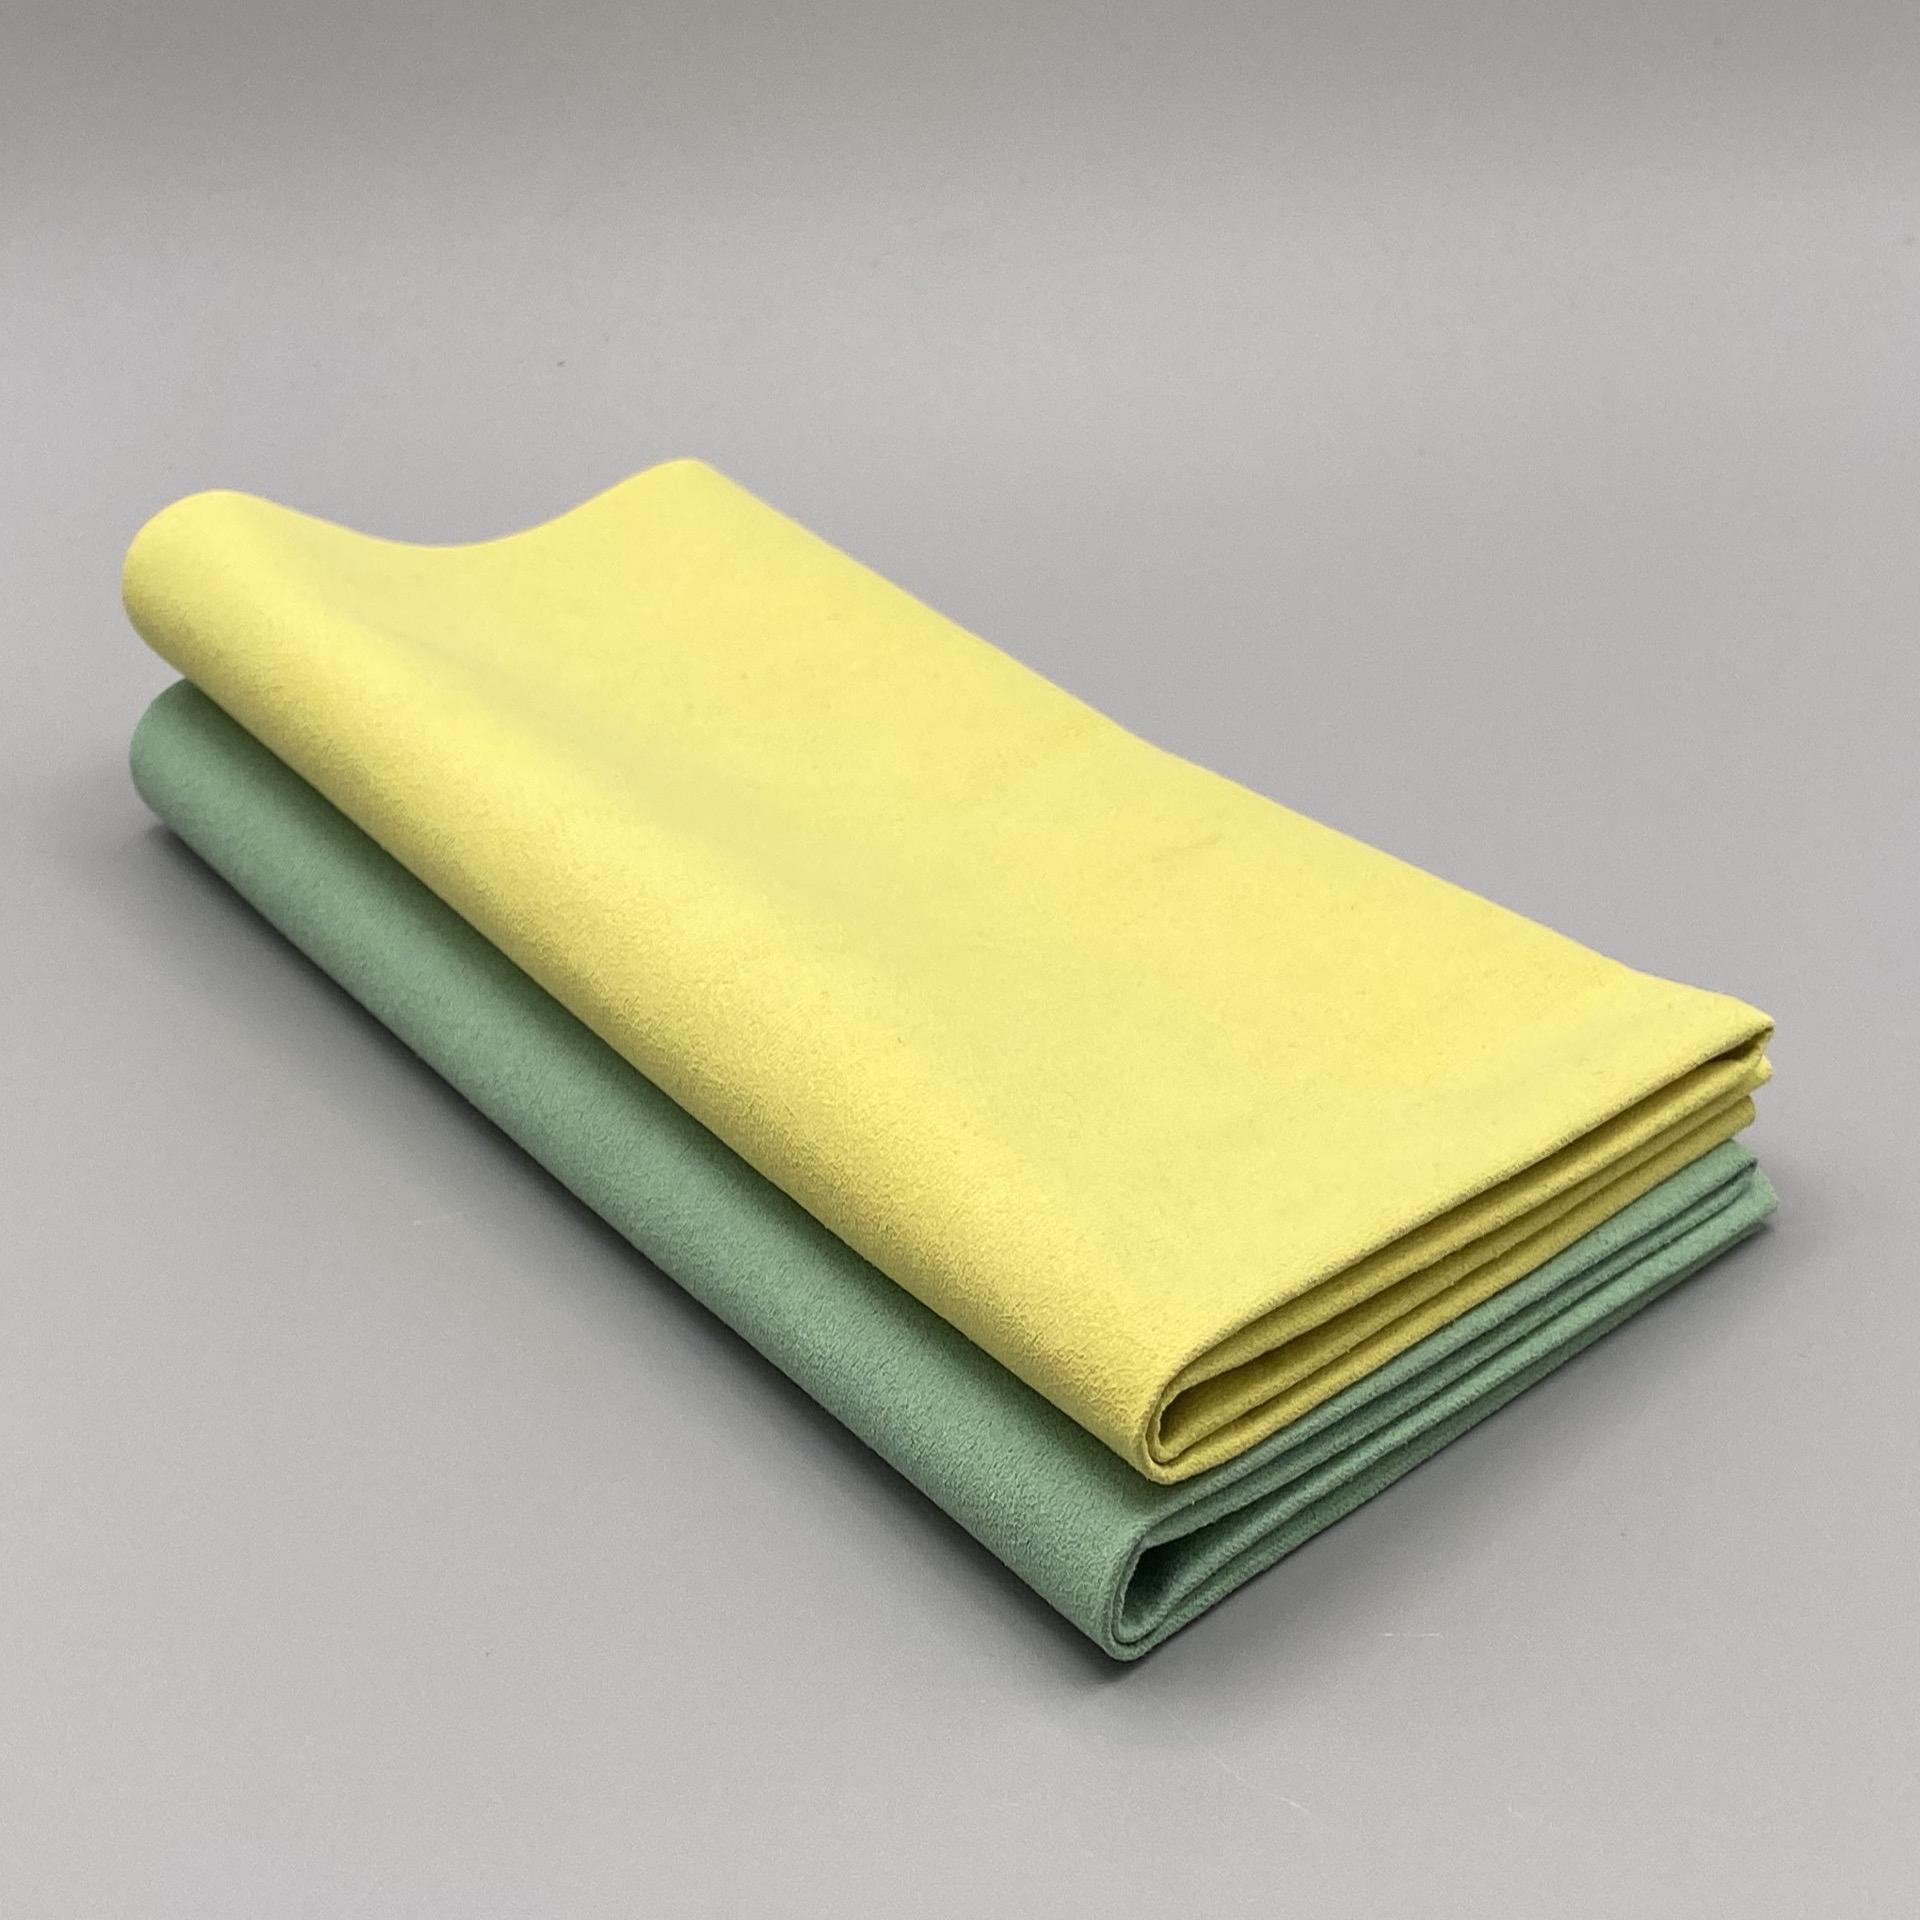 Zwei zweifach gefaltete Mikrofasertücher Premium in der farblichen Reihenfolge Grün und Gelb liegen übereinander